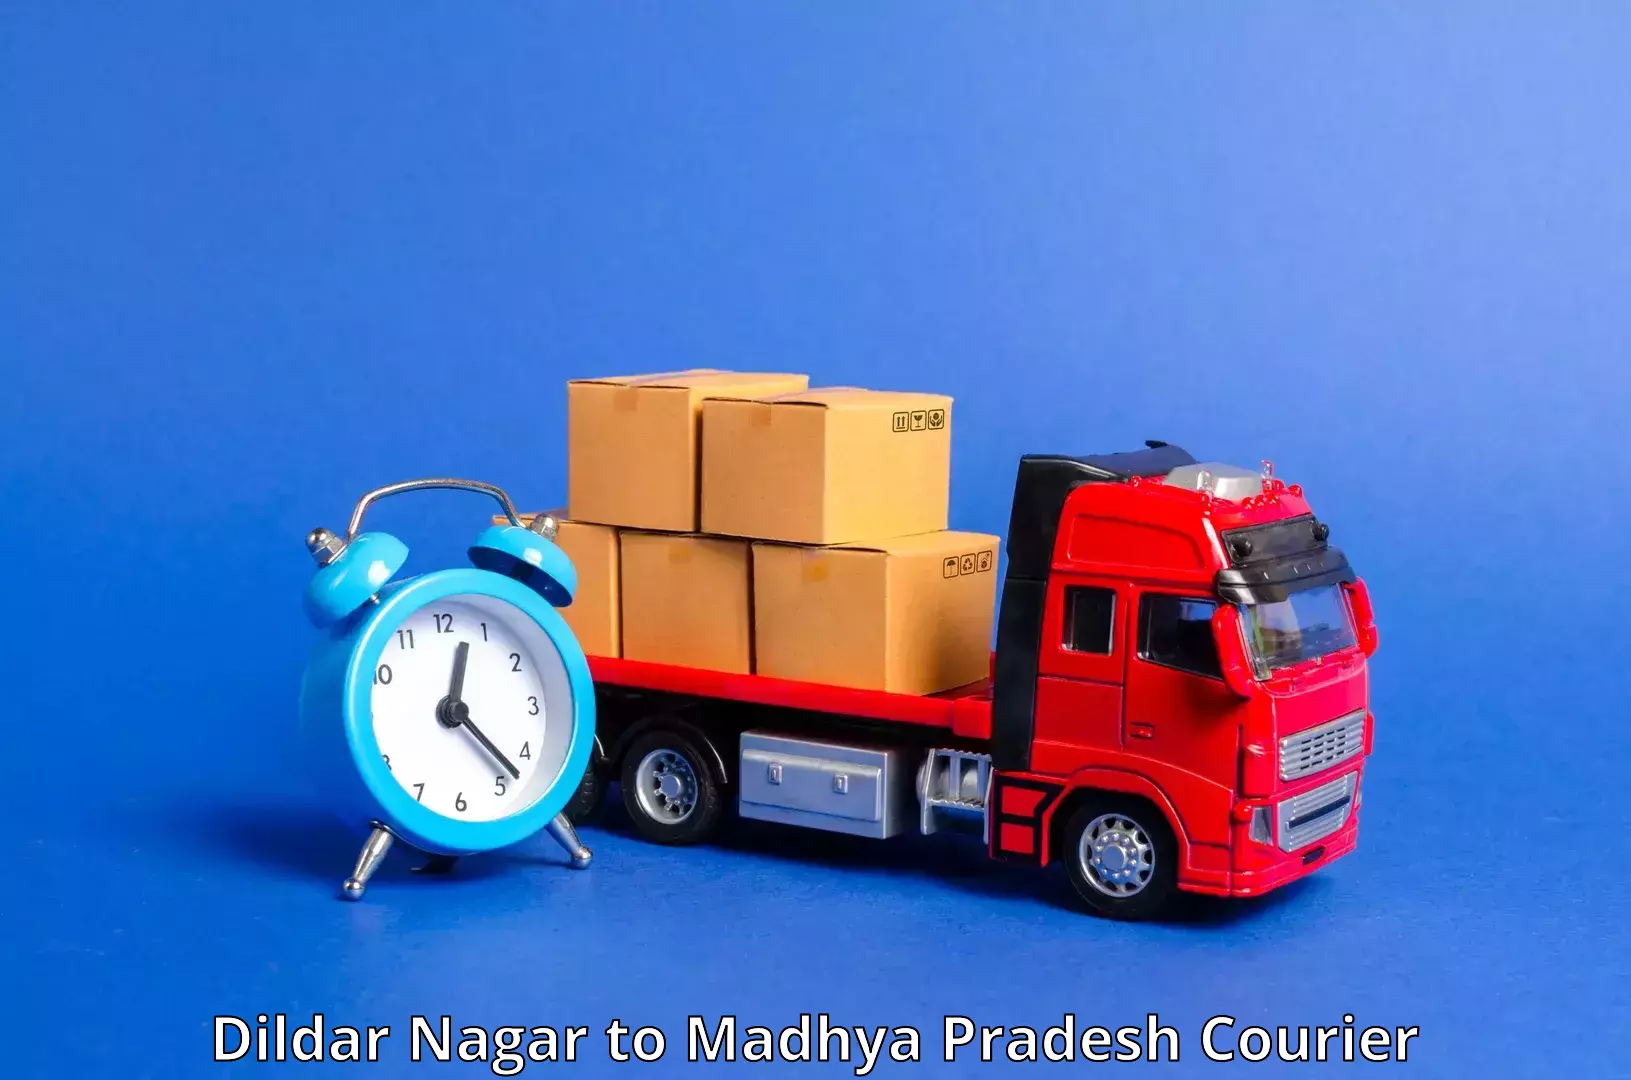 Innovative courier solutions Dildar Nagar to Guna